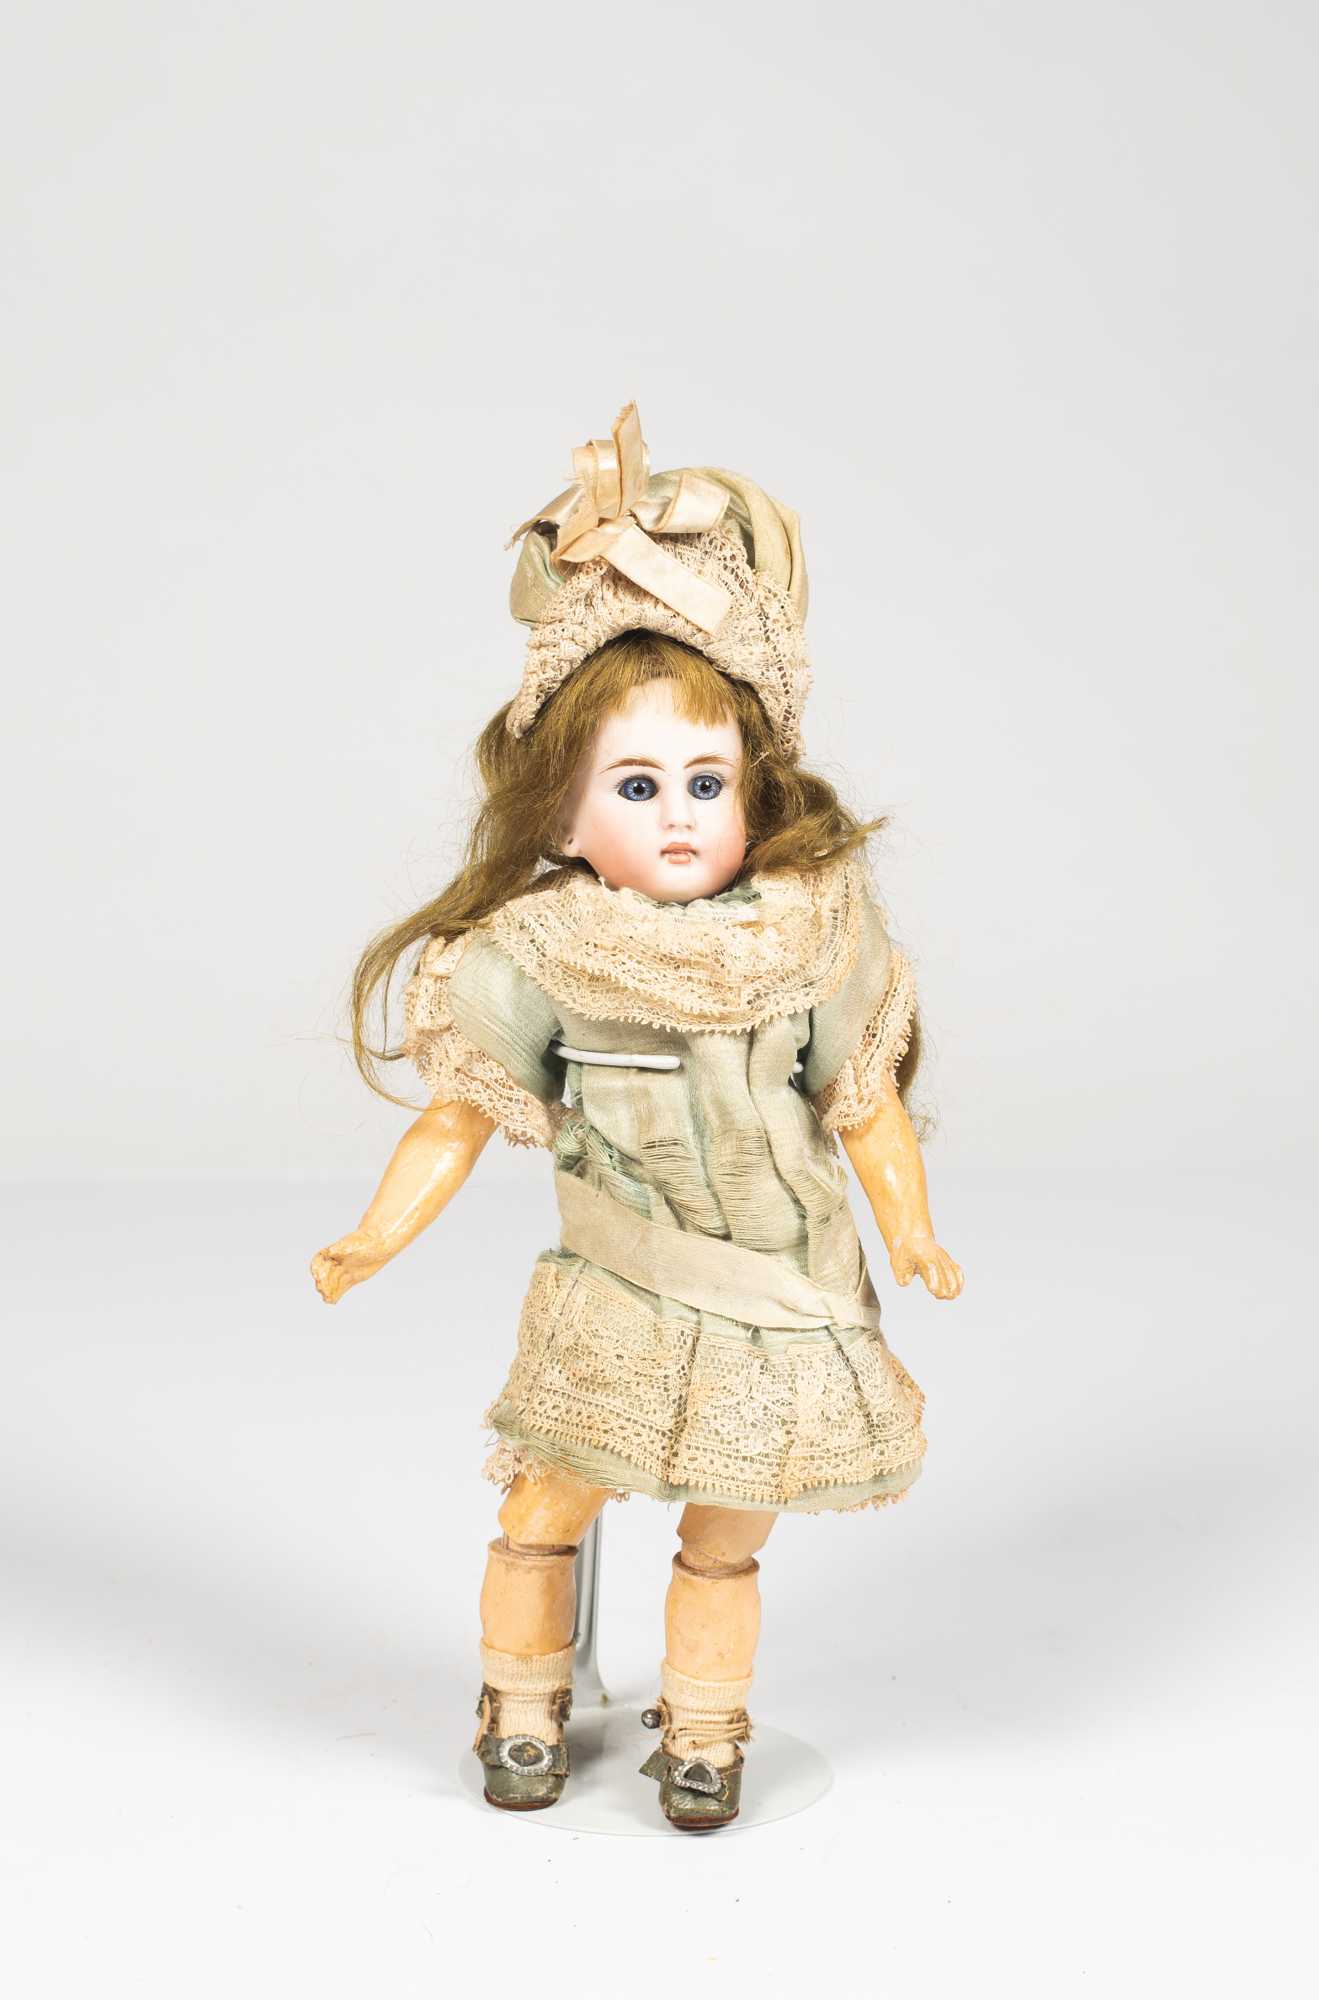 German Bisque Dolls.  Antique dolls, Bisque doll, Vintage paper dolls